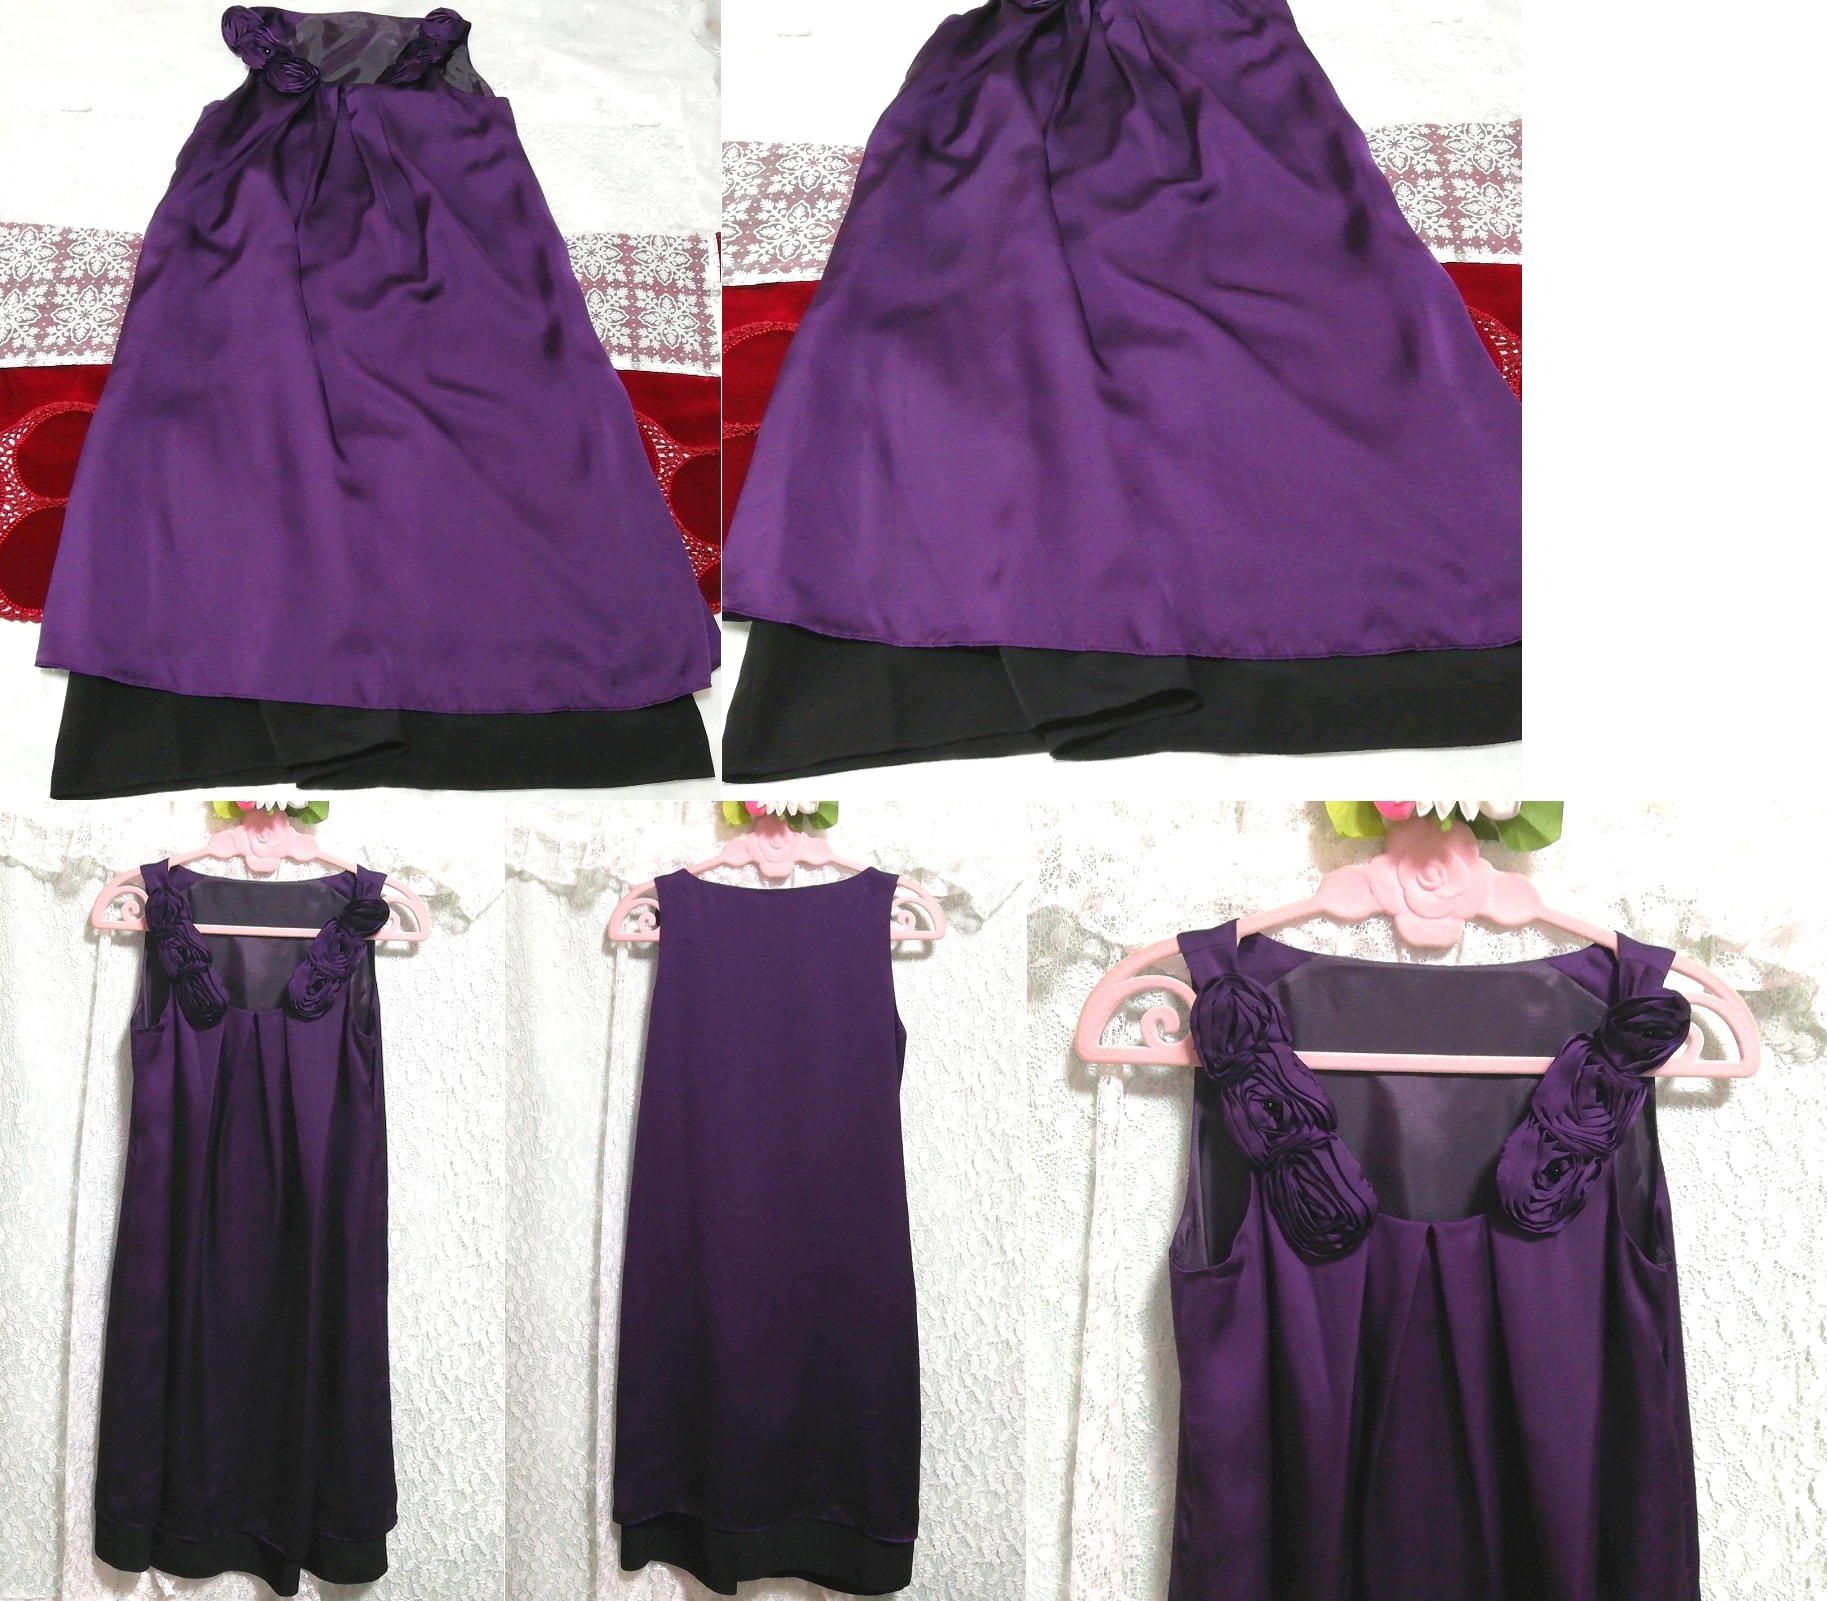 紫色玫瑰领缎面睡衣无袖一件式连衣裙, 时尚, 女士时装, 睡衣